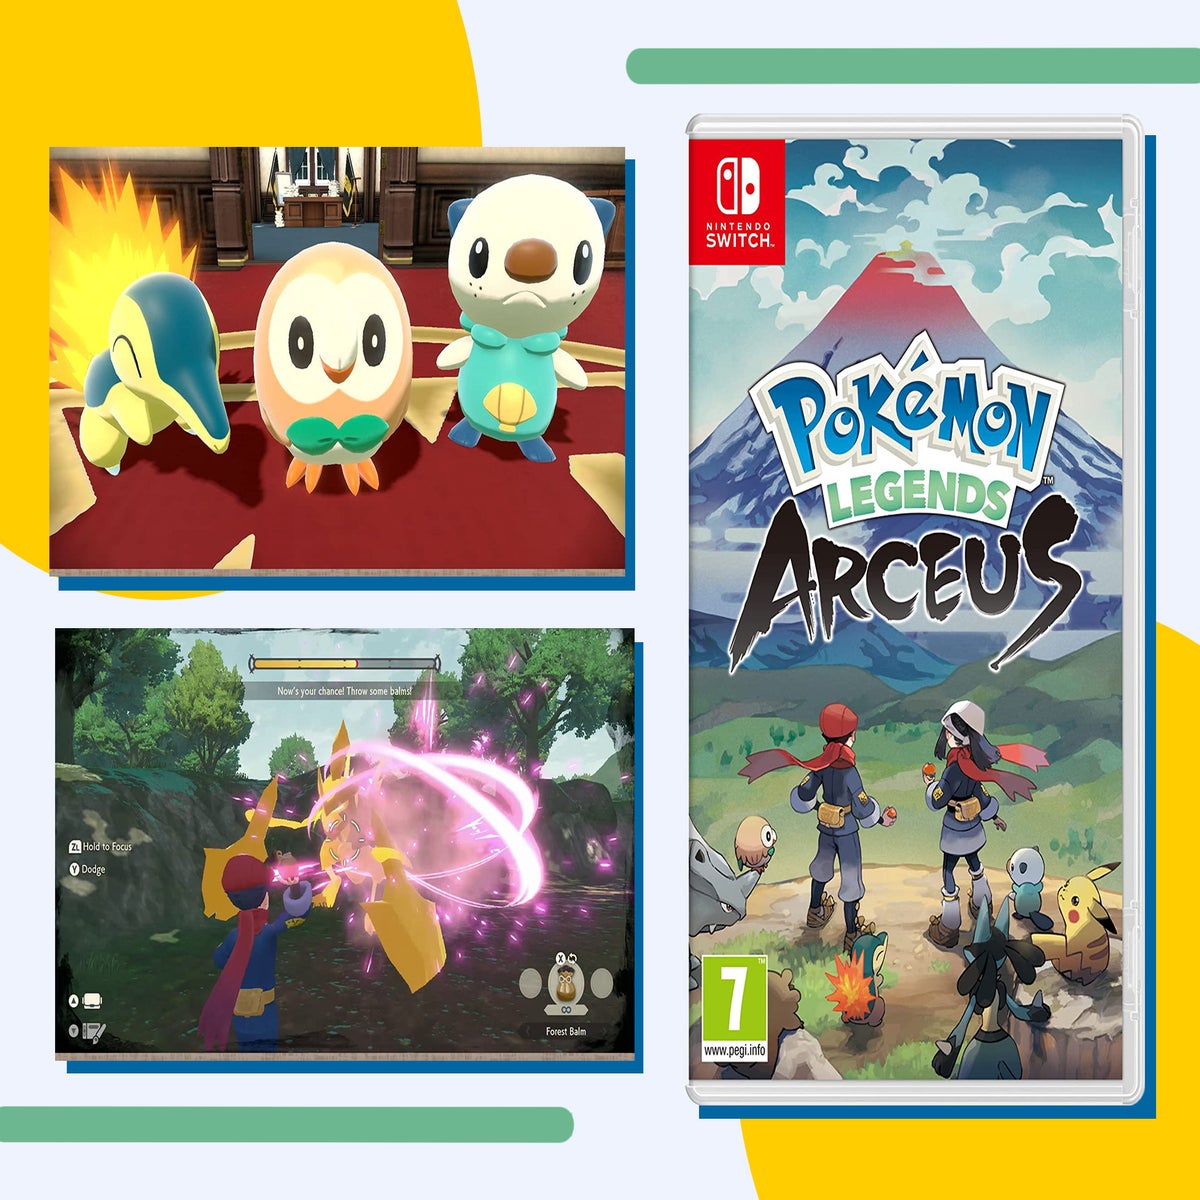 Pokémon Legends: Arceus' UK launch was huge, even without digital